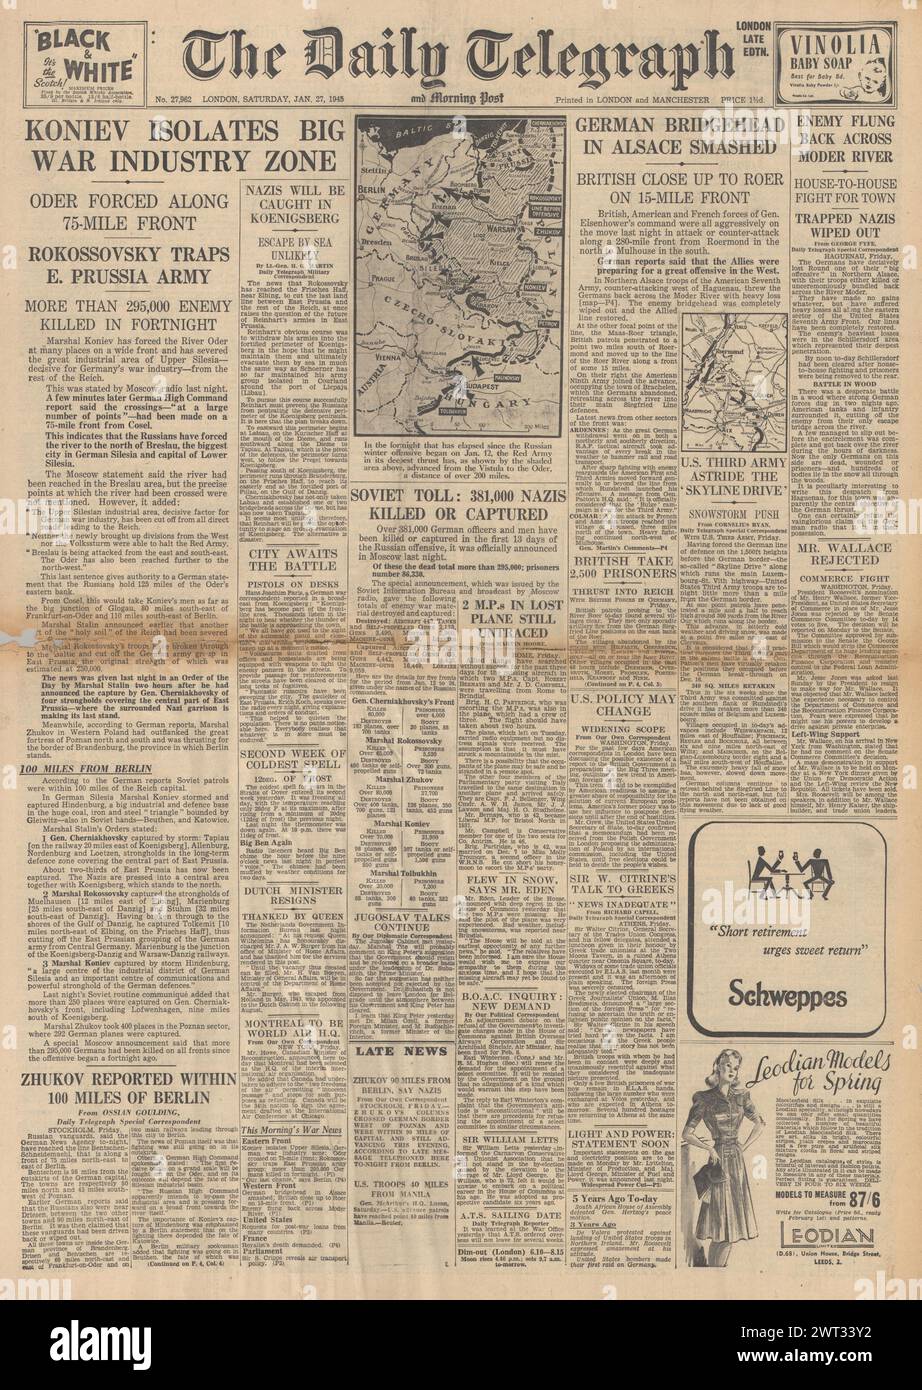 1945 la prima pagina del Daily Telegraph riportava l'avanzata dell'Armata Rossa in Slesia, la Prussia orientale tagliata fuori e la testa di ponte tedesca si schiantò in Alsazia Foto Stock